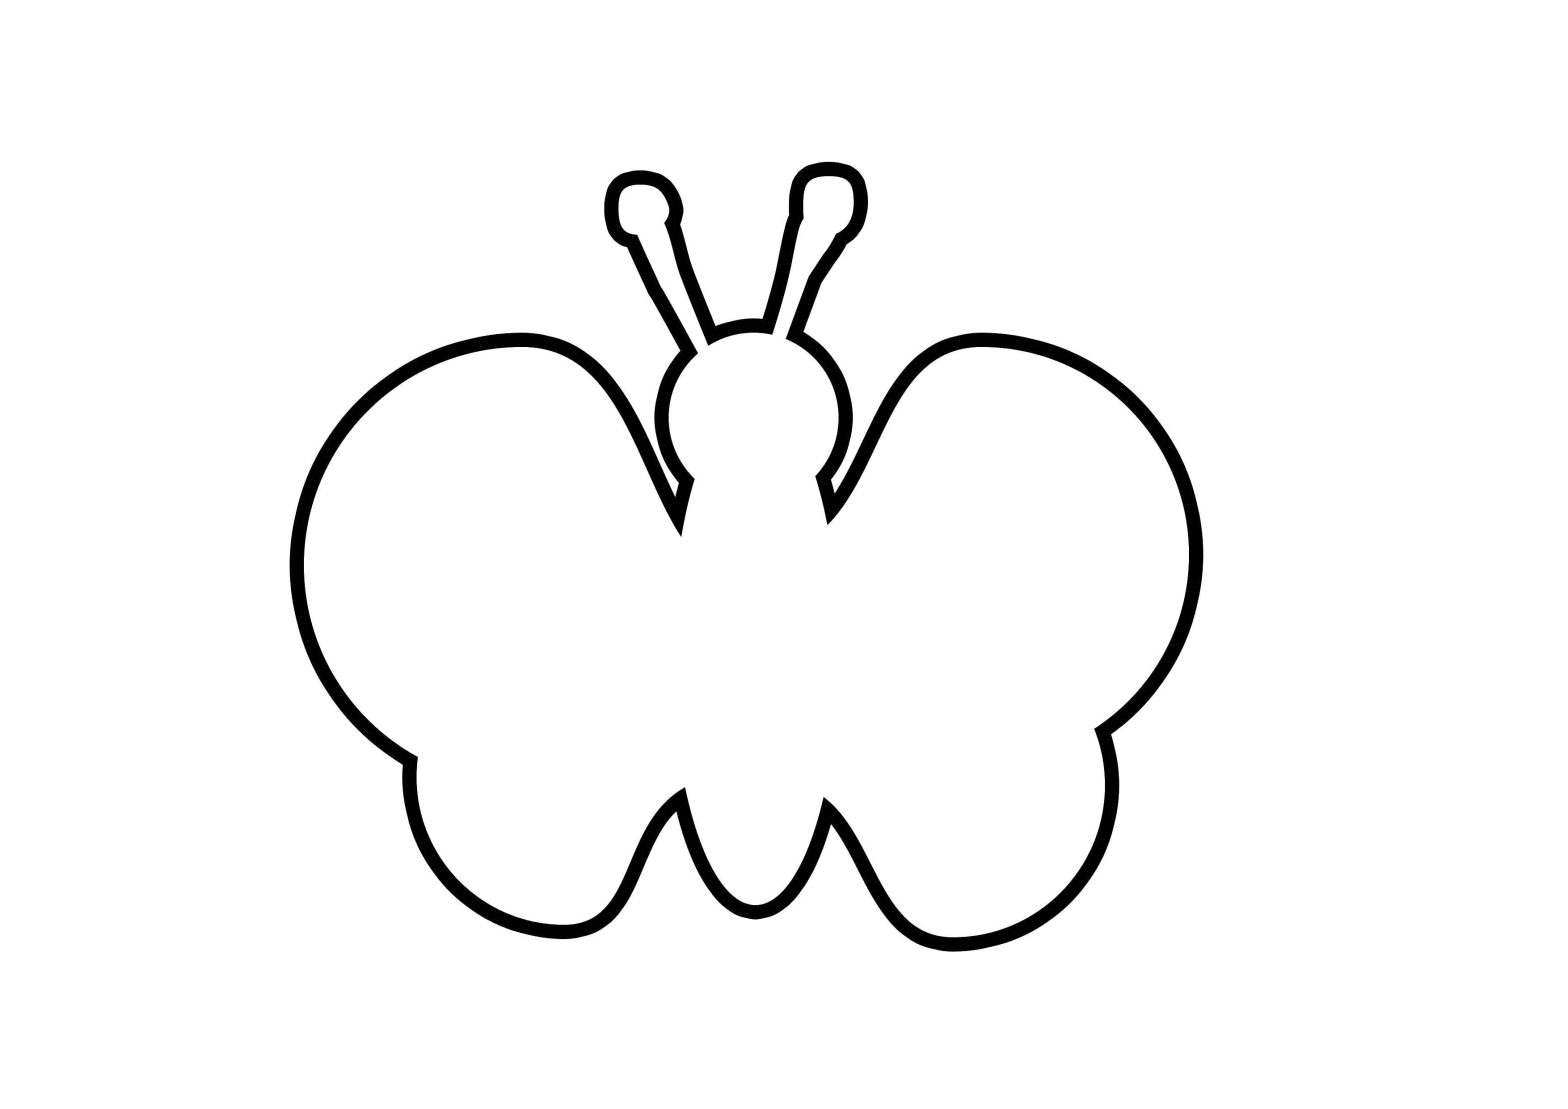 Контур бабочки для вырезания и раскраски (контуры, шаблоны)